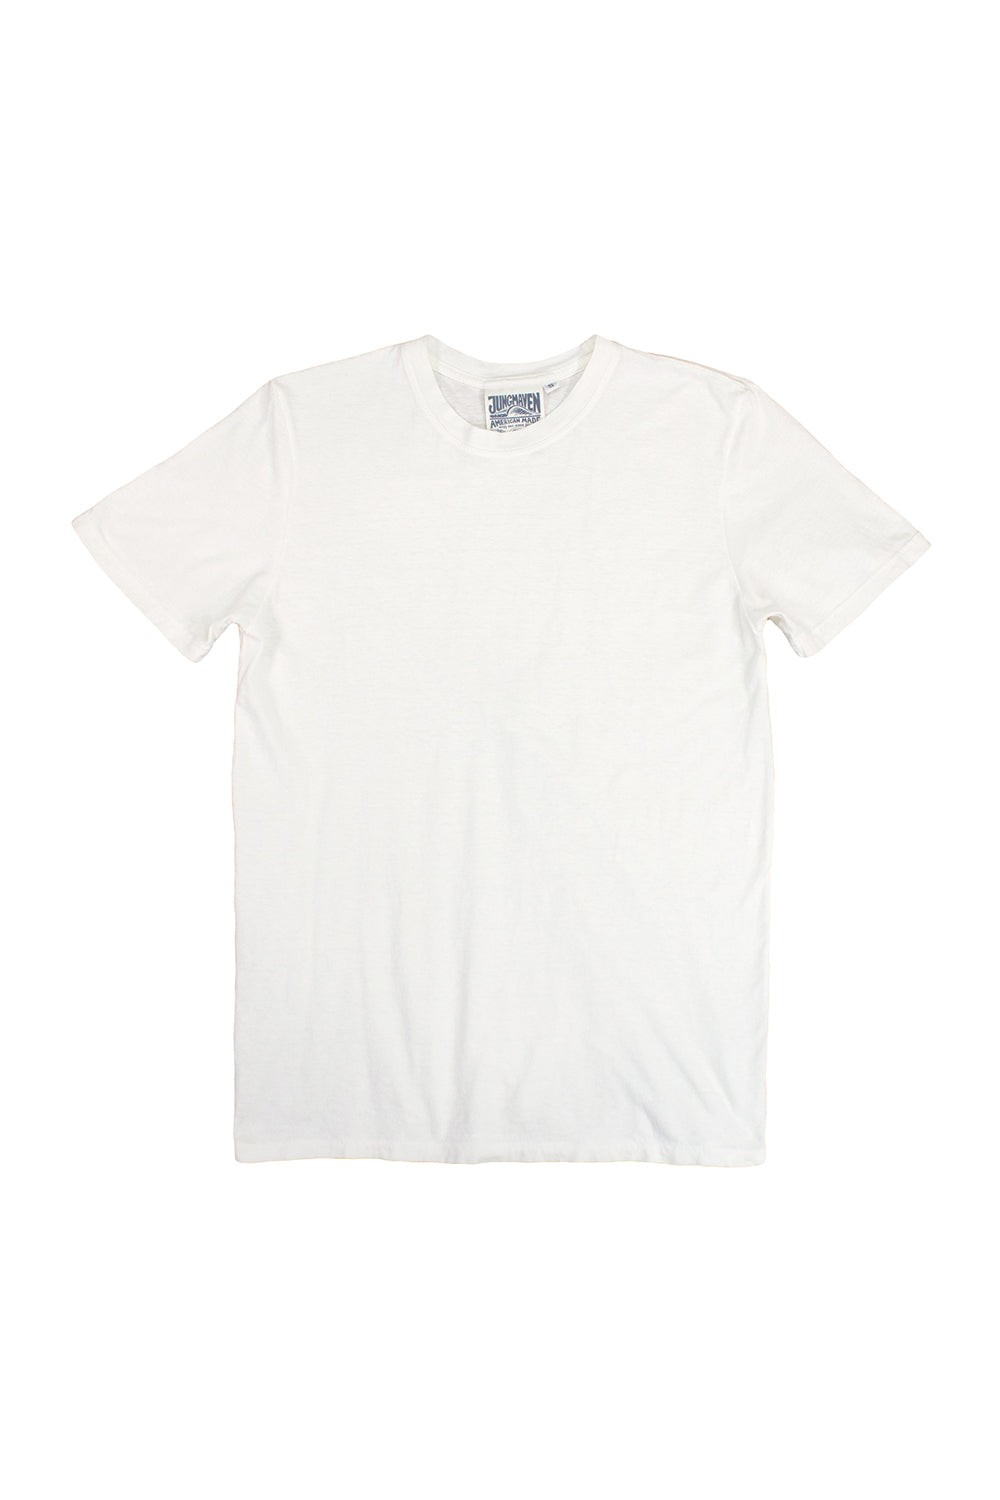 Blank White T-Shirt - SILKY SOCKS